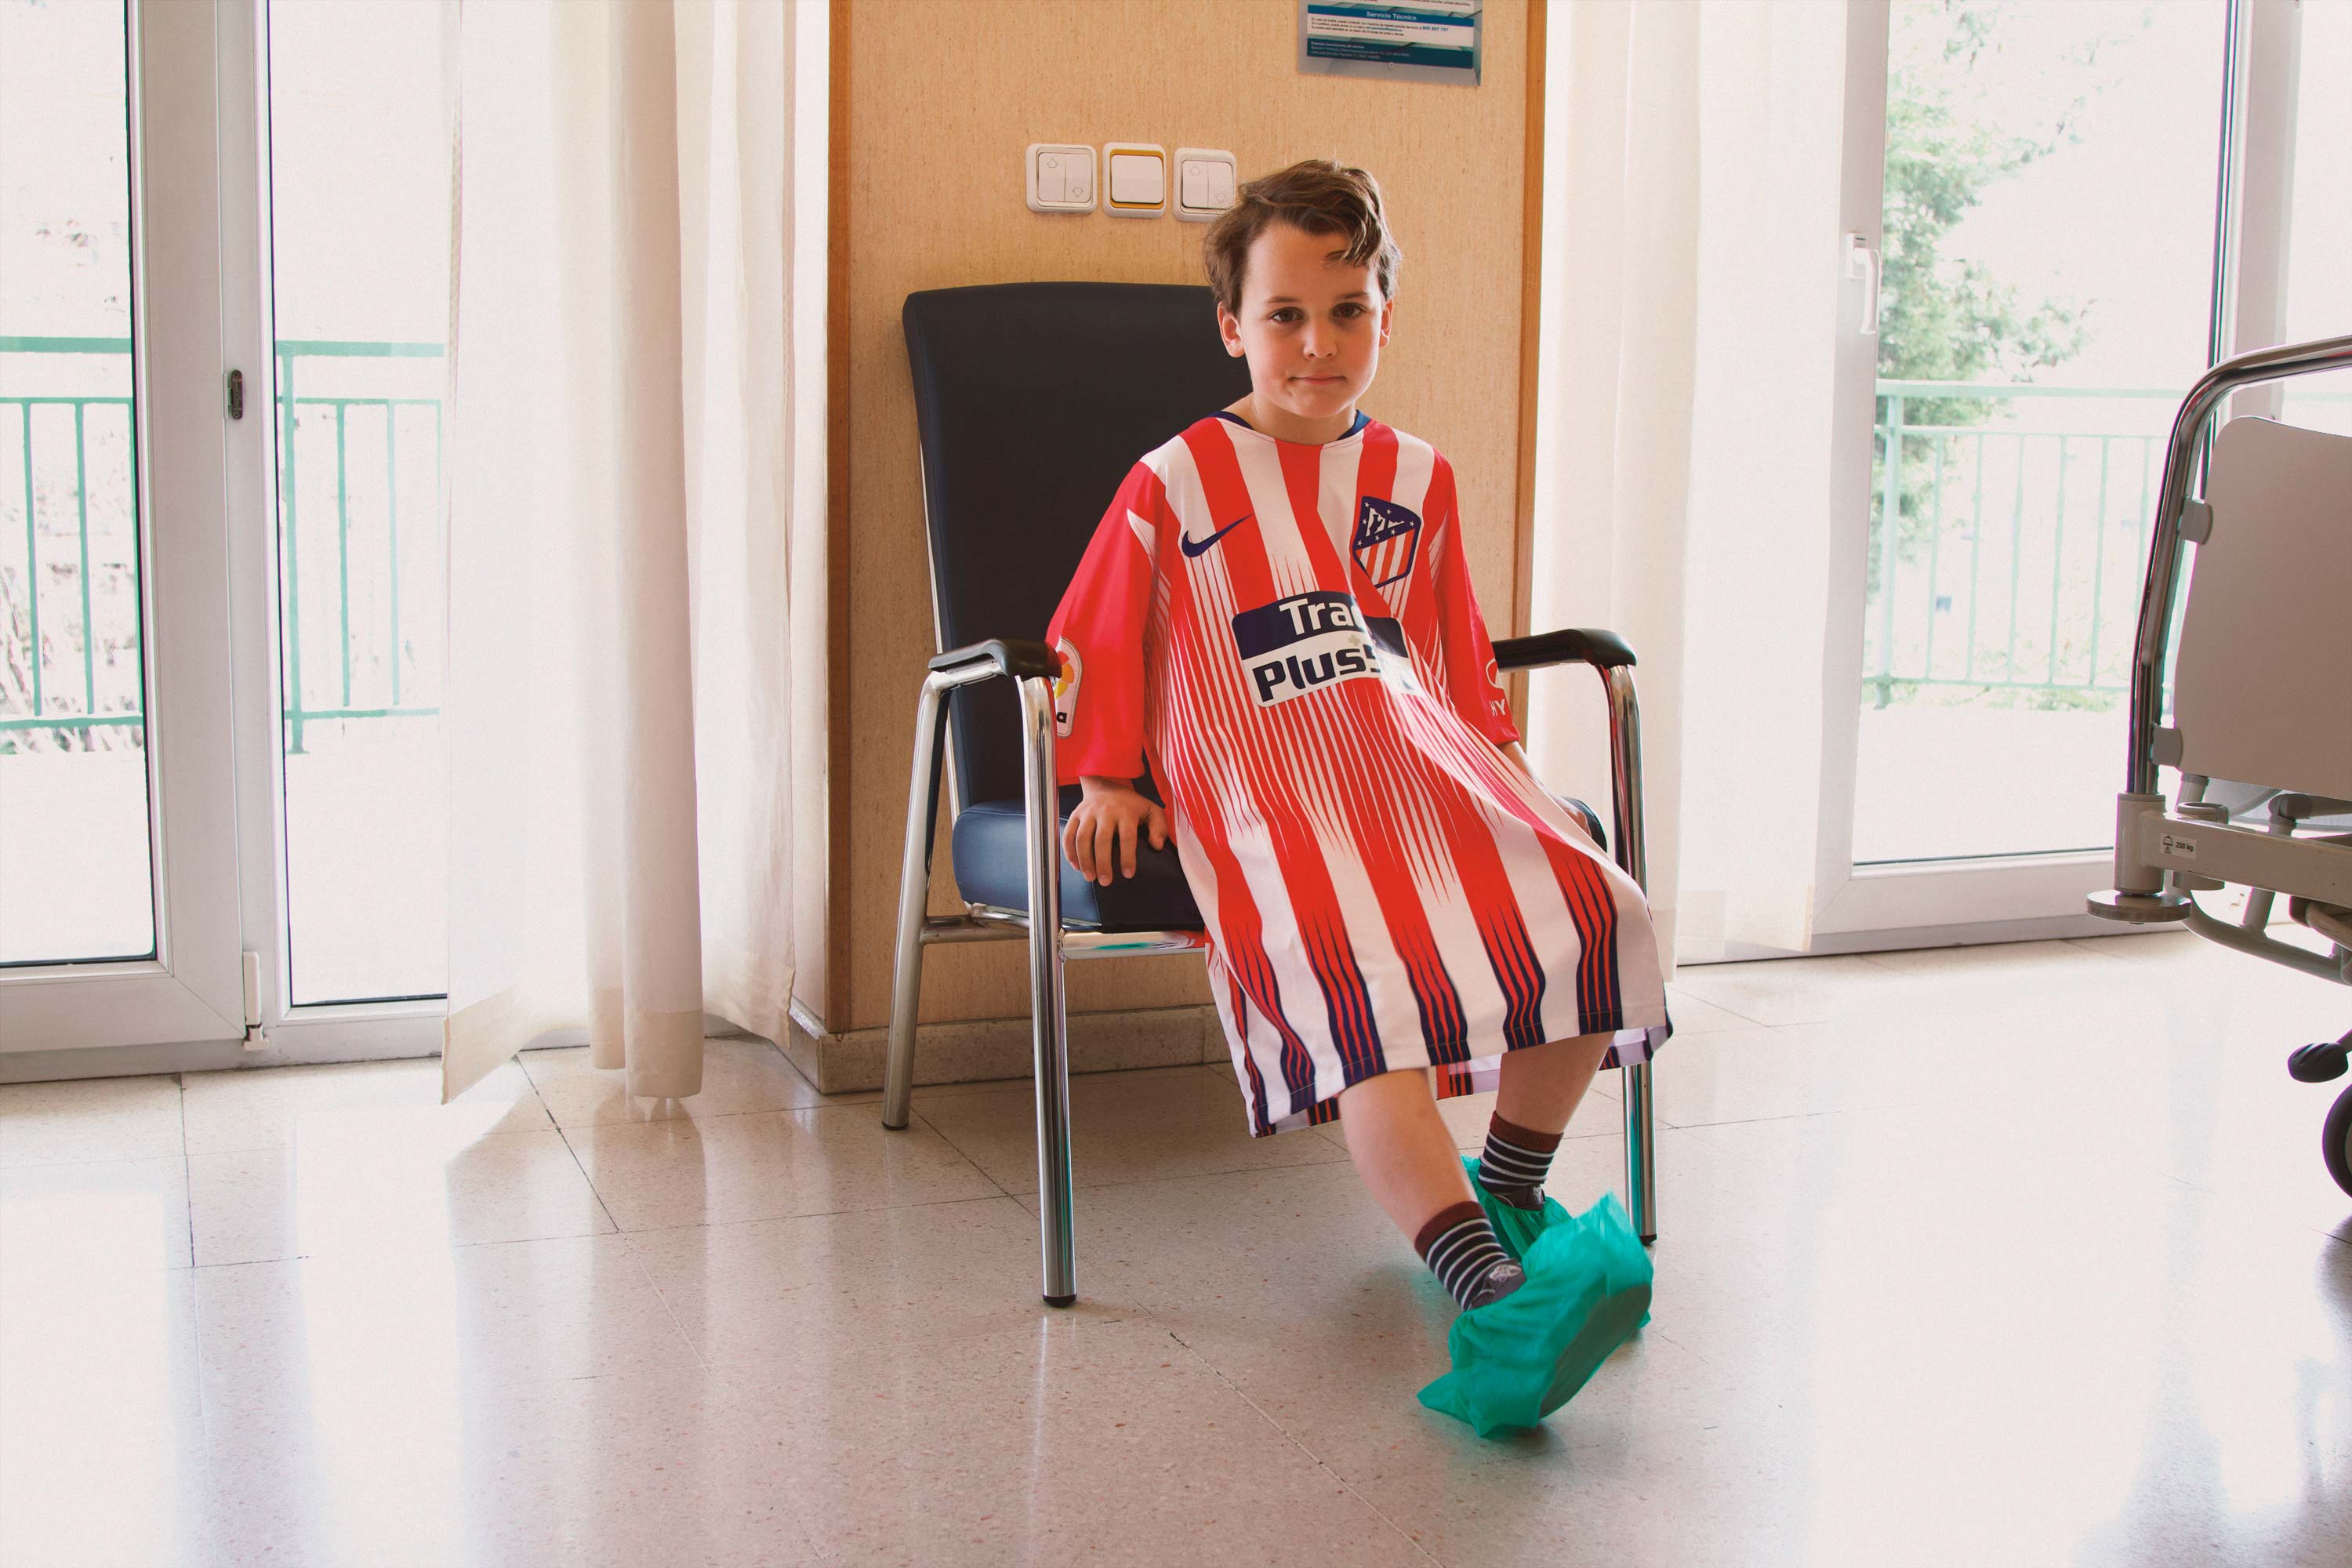 Νοσοκομείο στην Ισπανία έχει πλέον ρόμπες για τα παιδιά από τις φανέλες των ομάδων τους